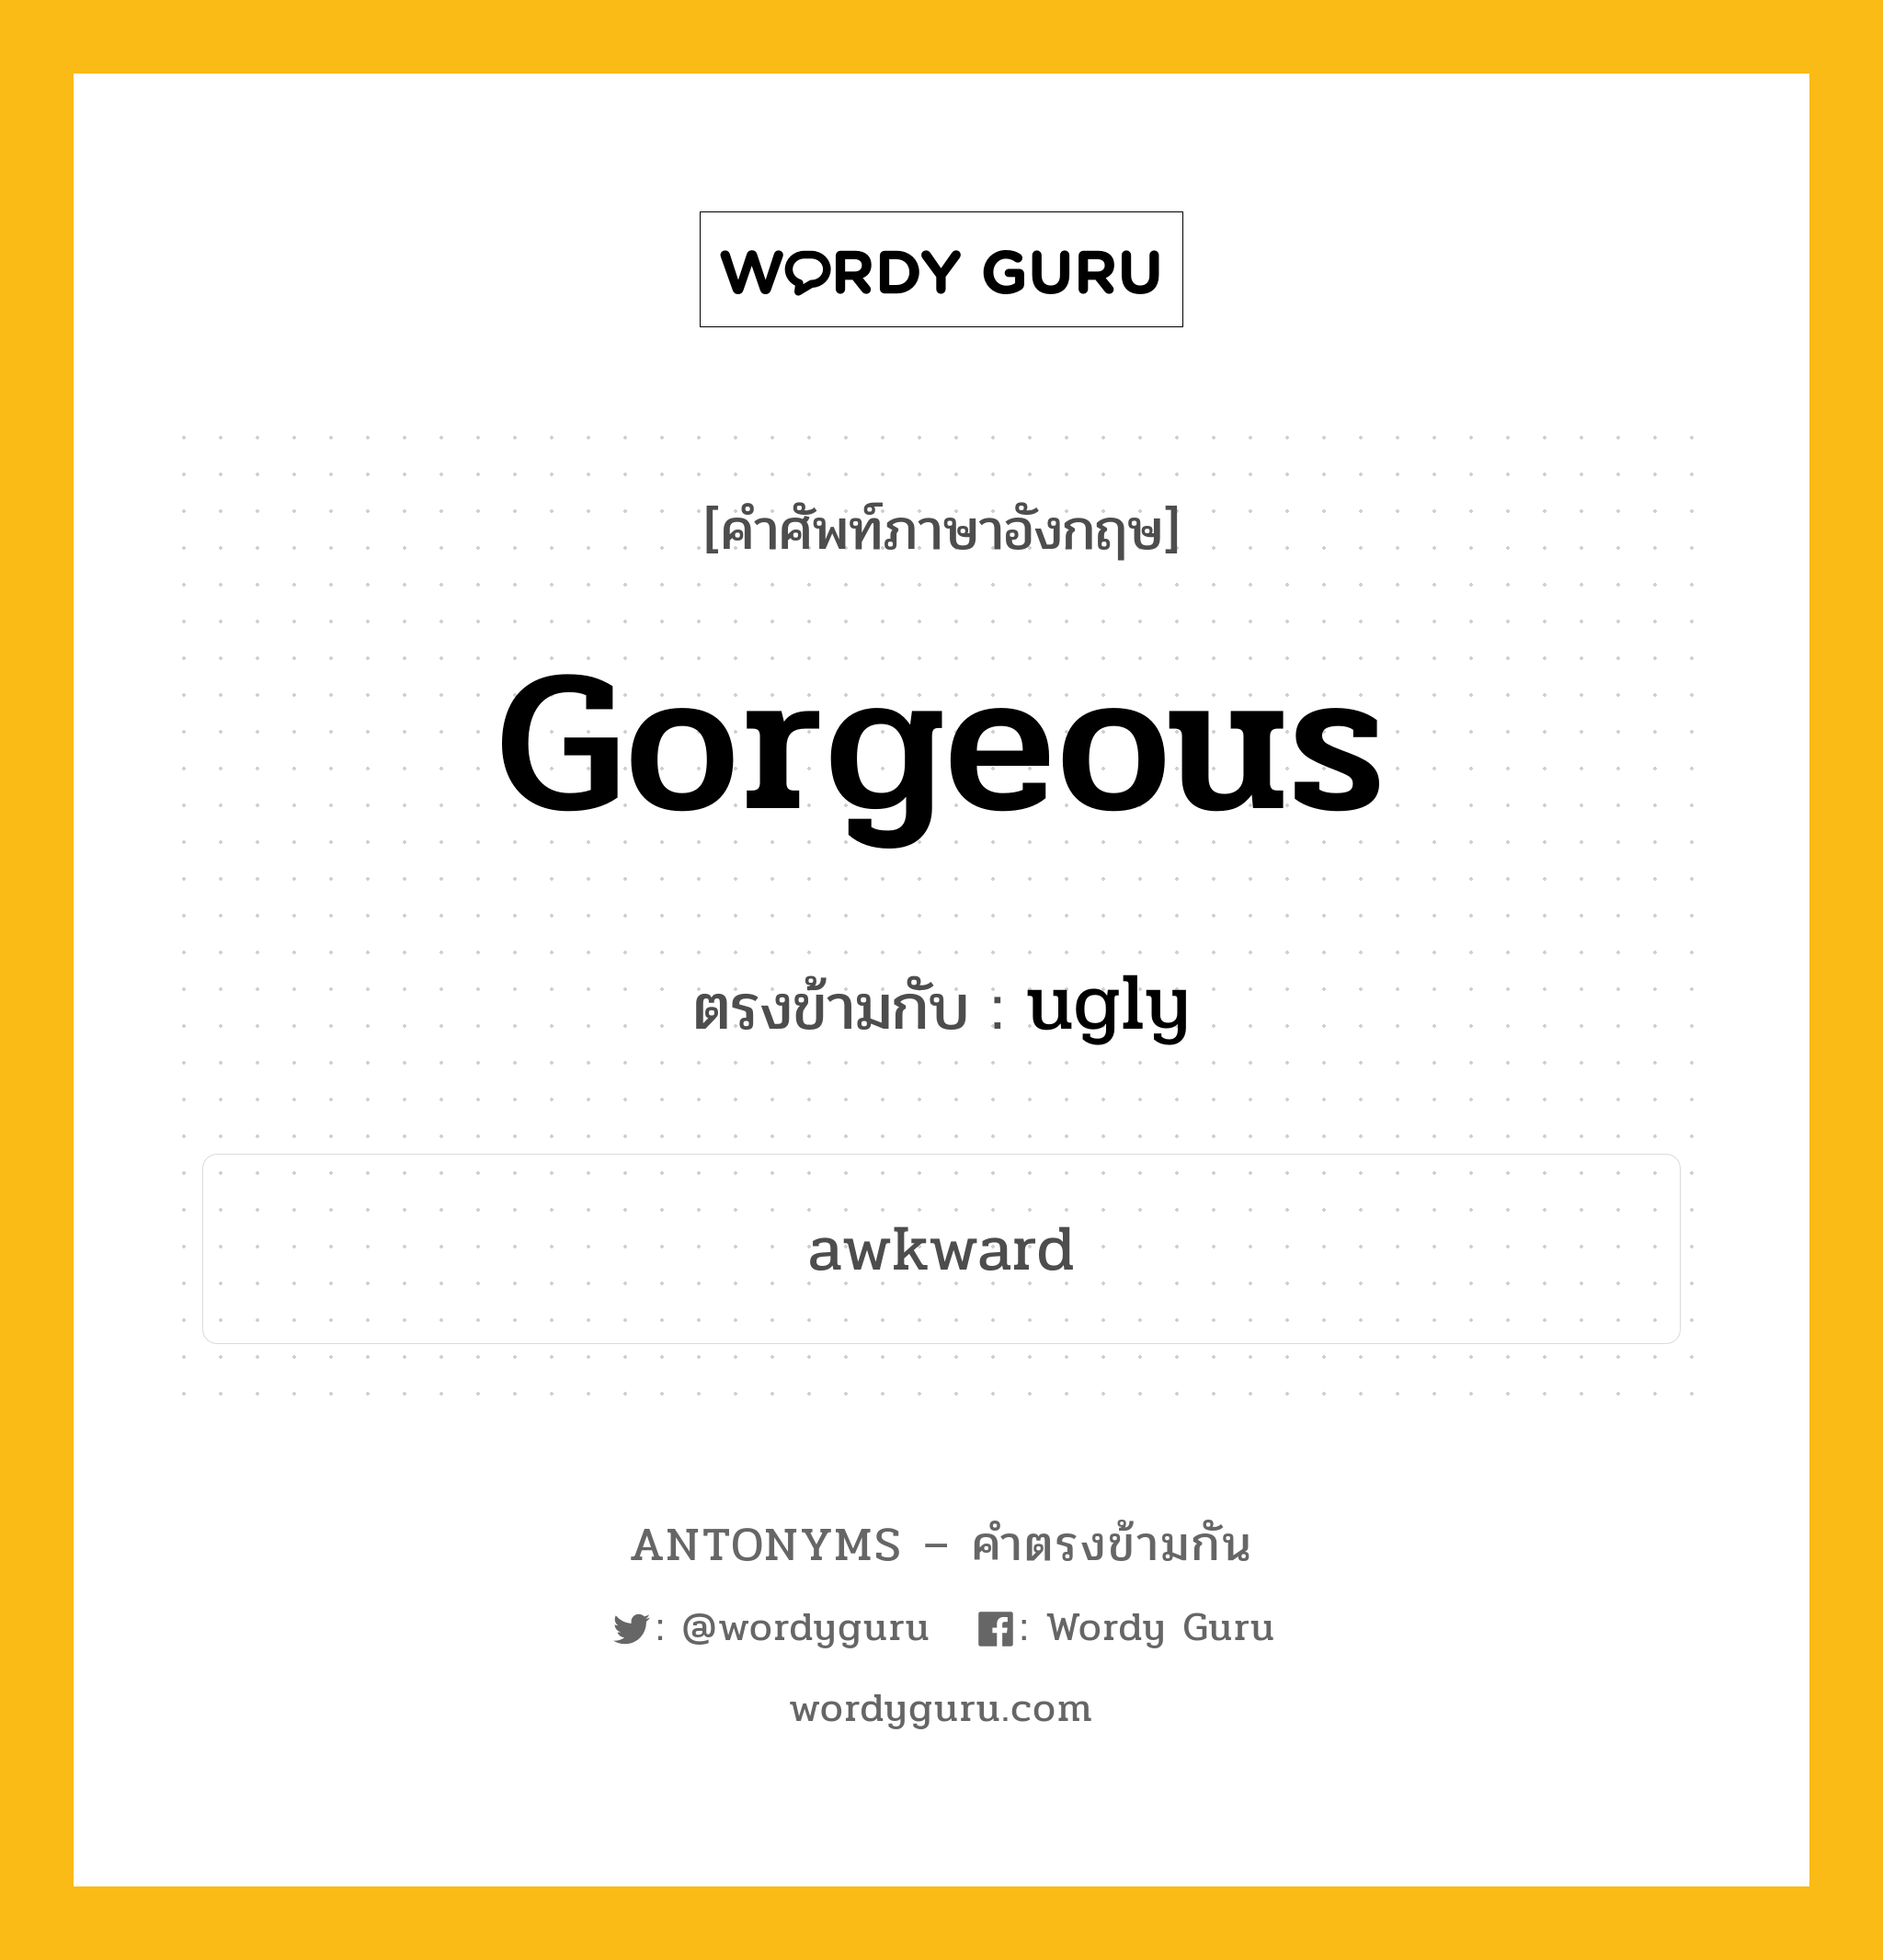 gorgeous เป็นคำตรงข้ามกับคำไหนบ้าง?, คำศัพท์ภาษาอังกฤษที่มีความหมายตรงข้ามกัน gorgeous ตรงข้ามกับ ugly หมวด ugly